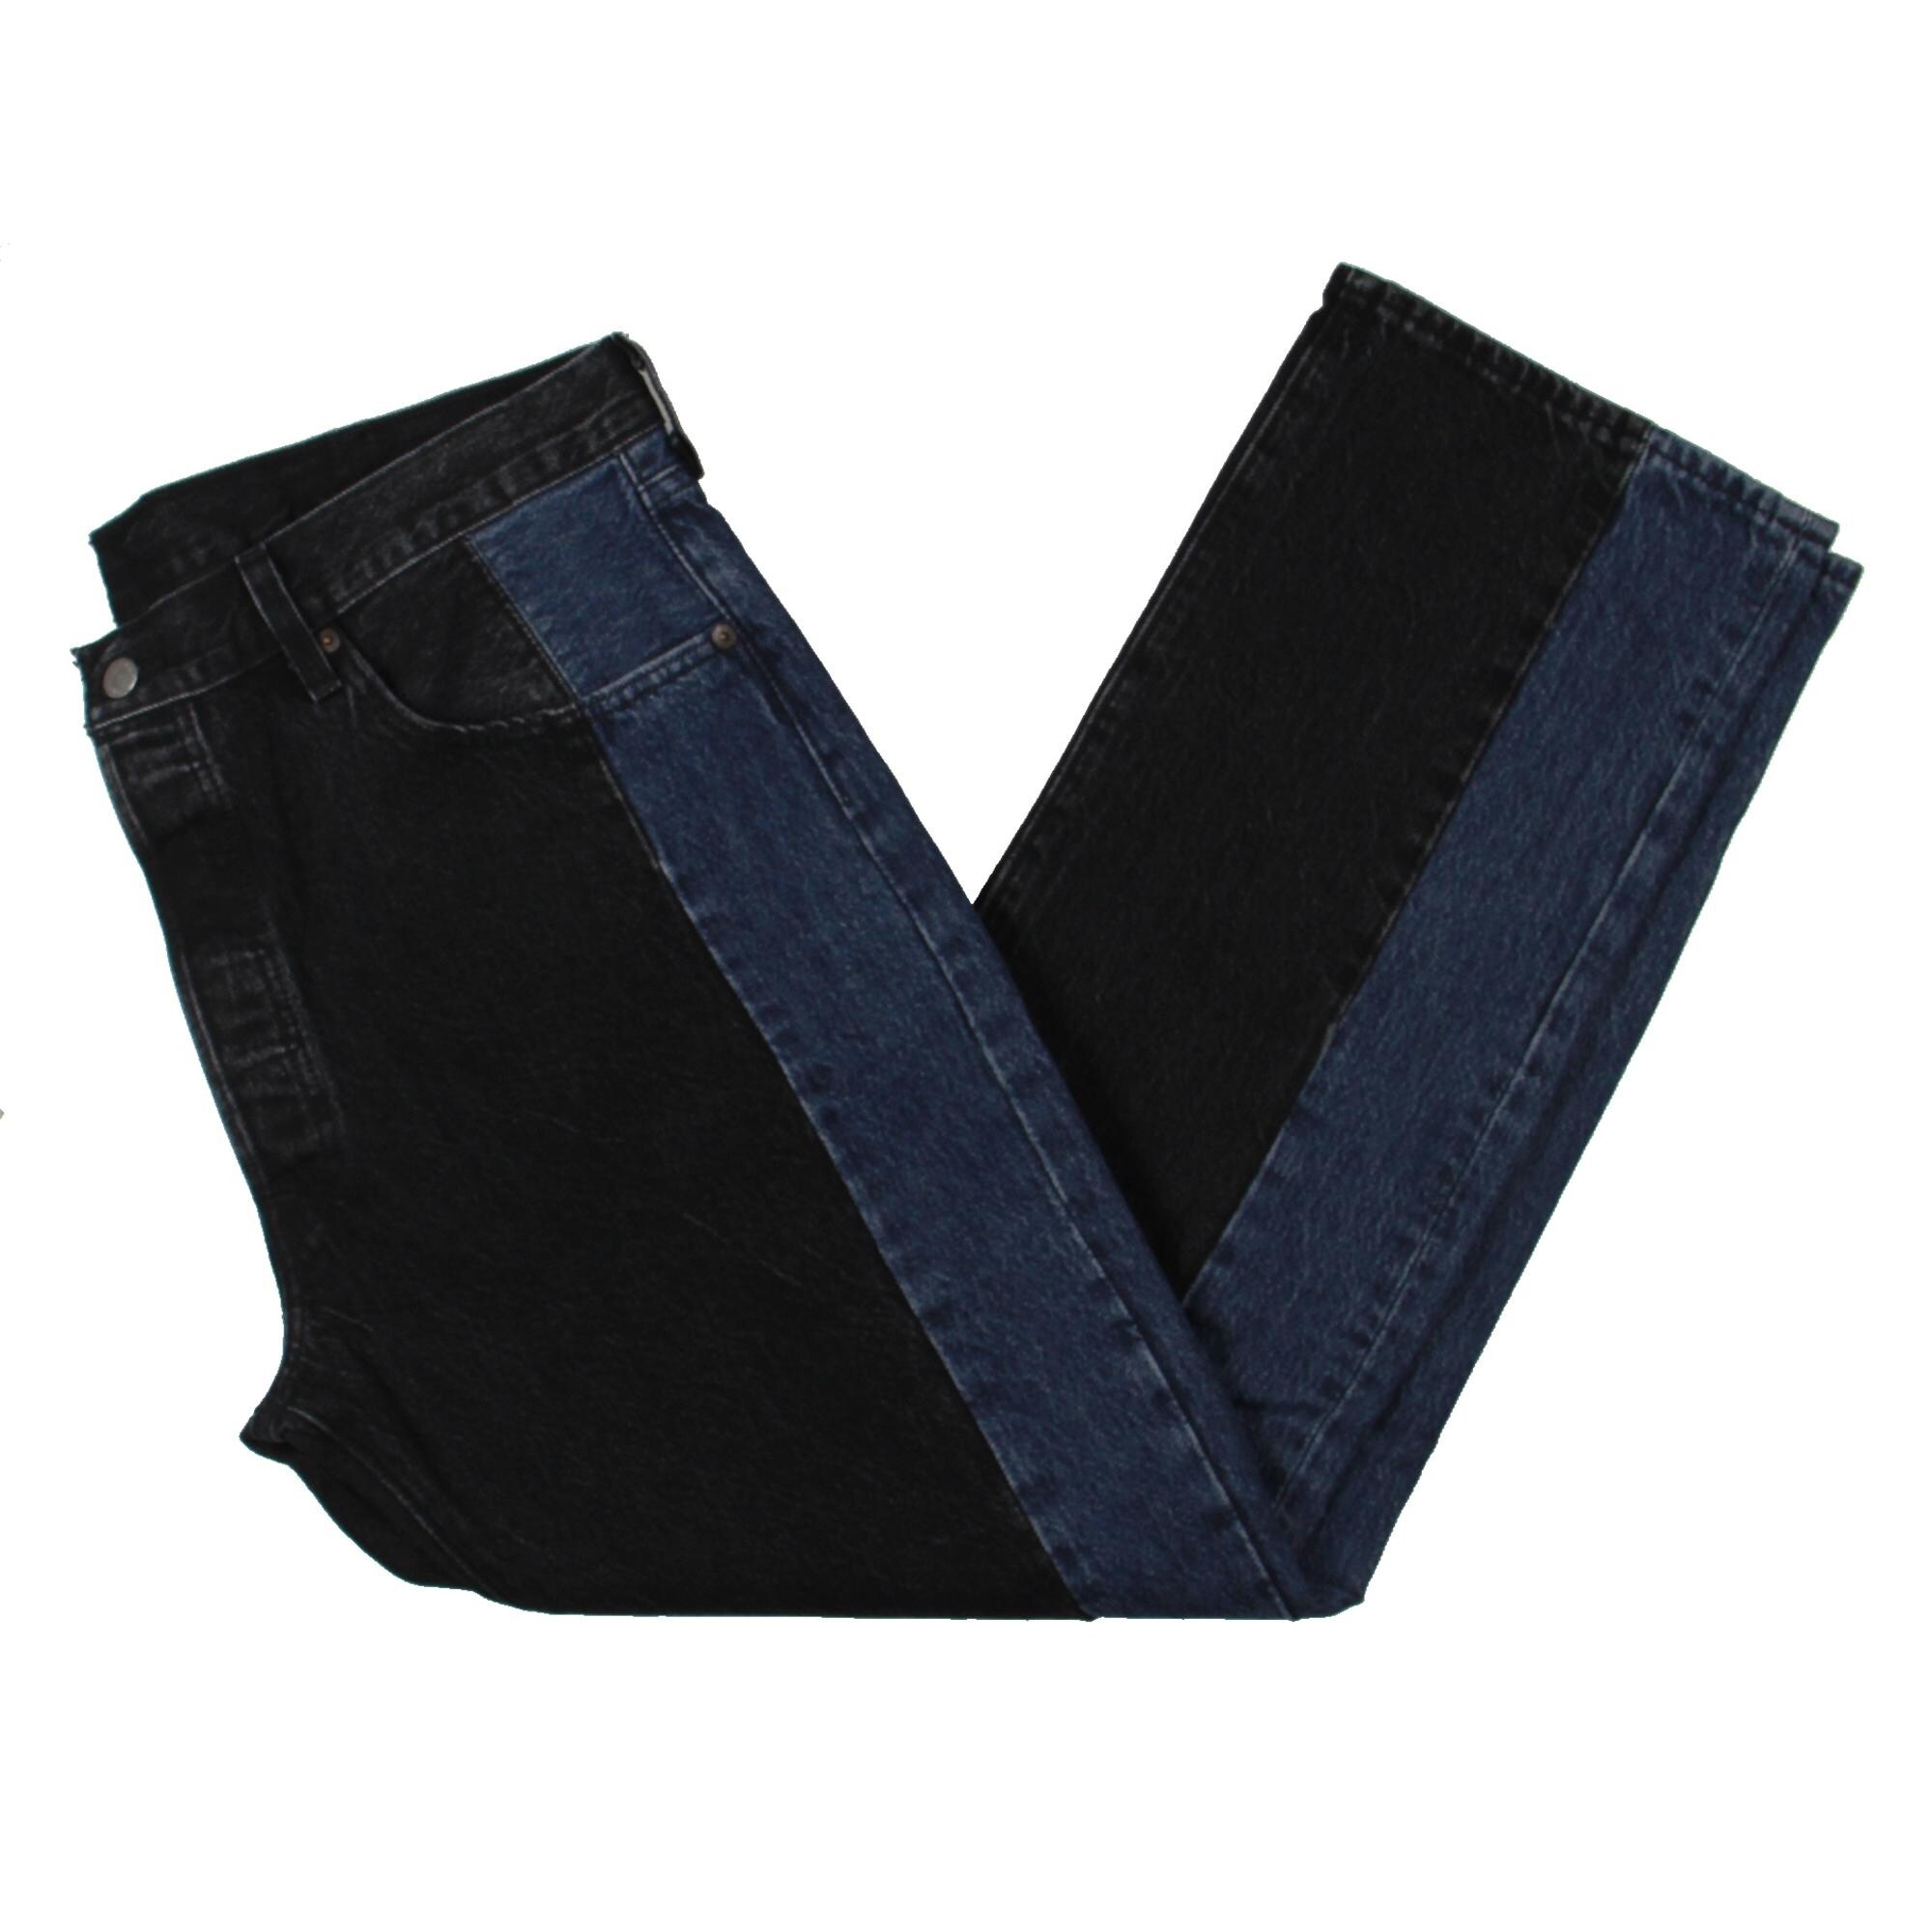 levis colorblock jeans